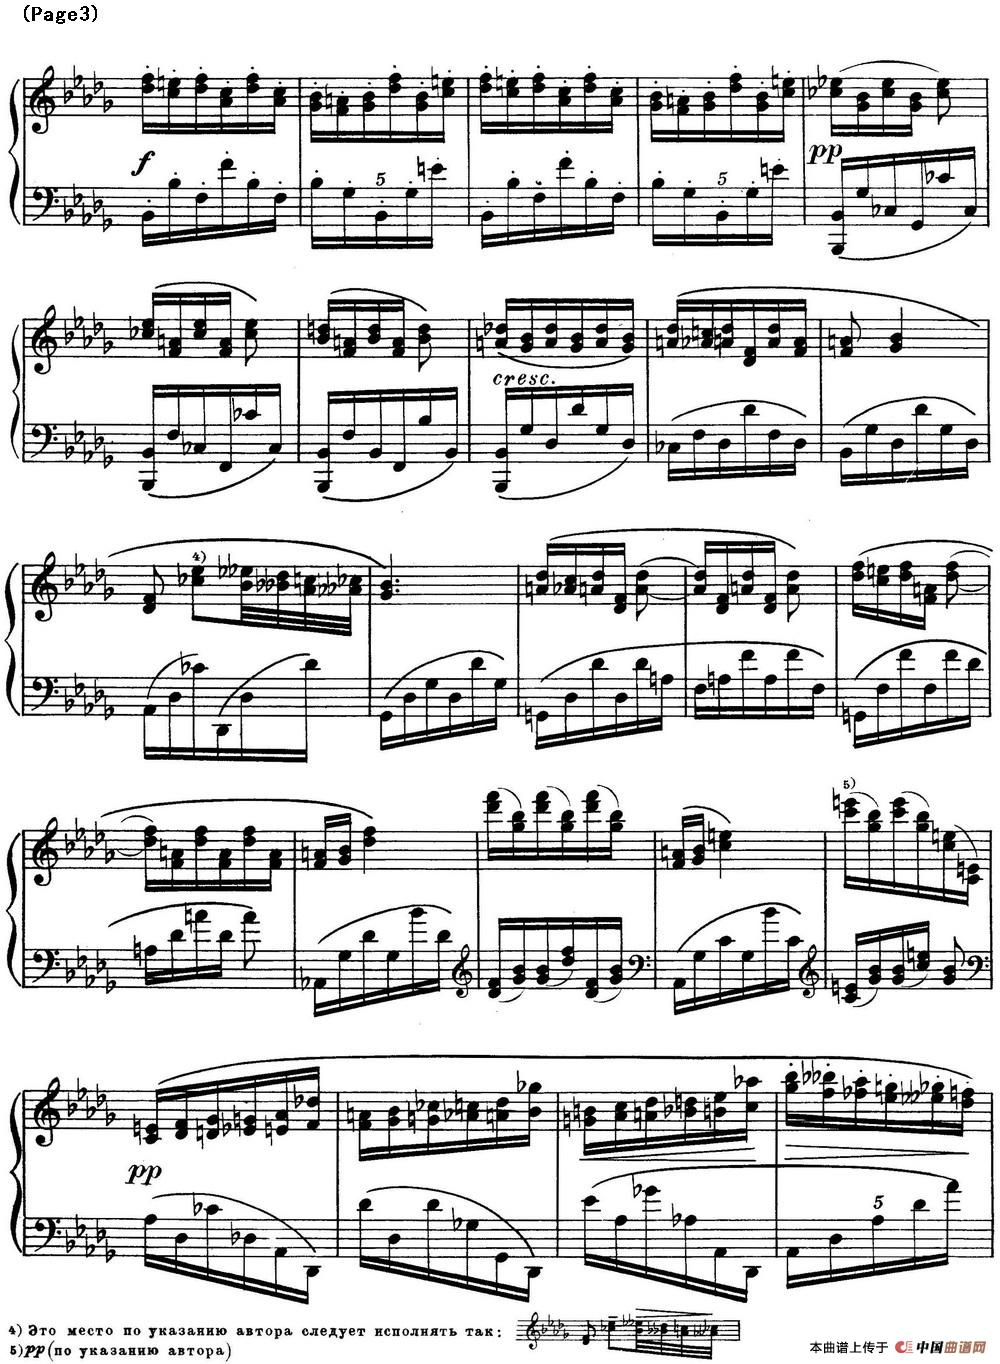 斯克里亚宾12首钢琴练习曲 Op8（No.10 Alexander Scriabin Etudes）(1)_Scriabin Etude Op.8 No.10_页面_3.jpg